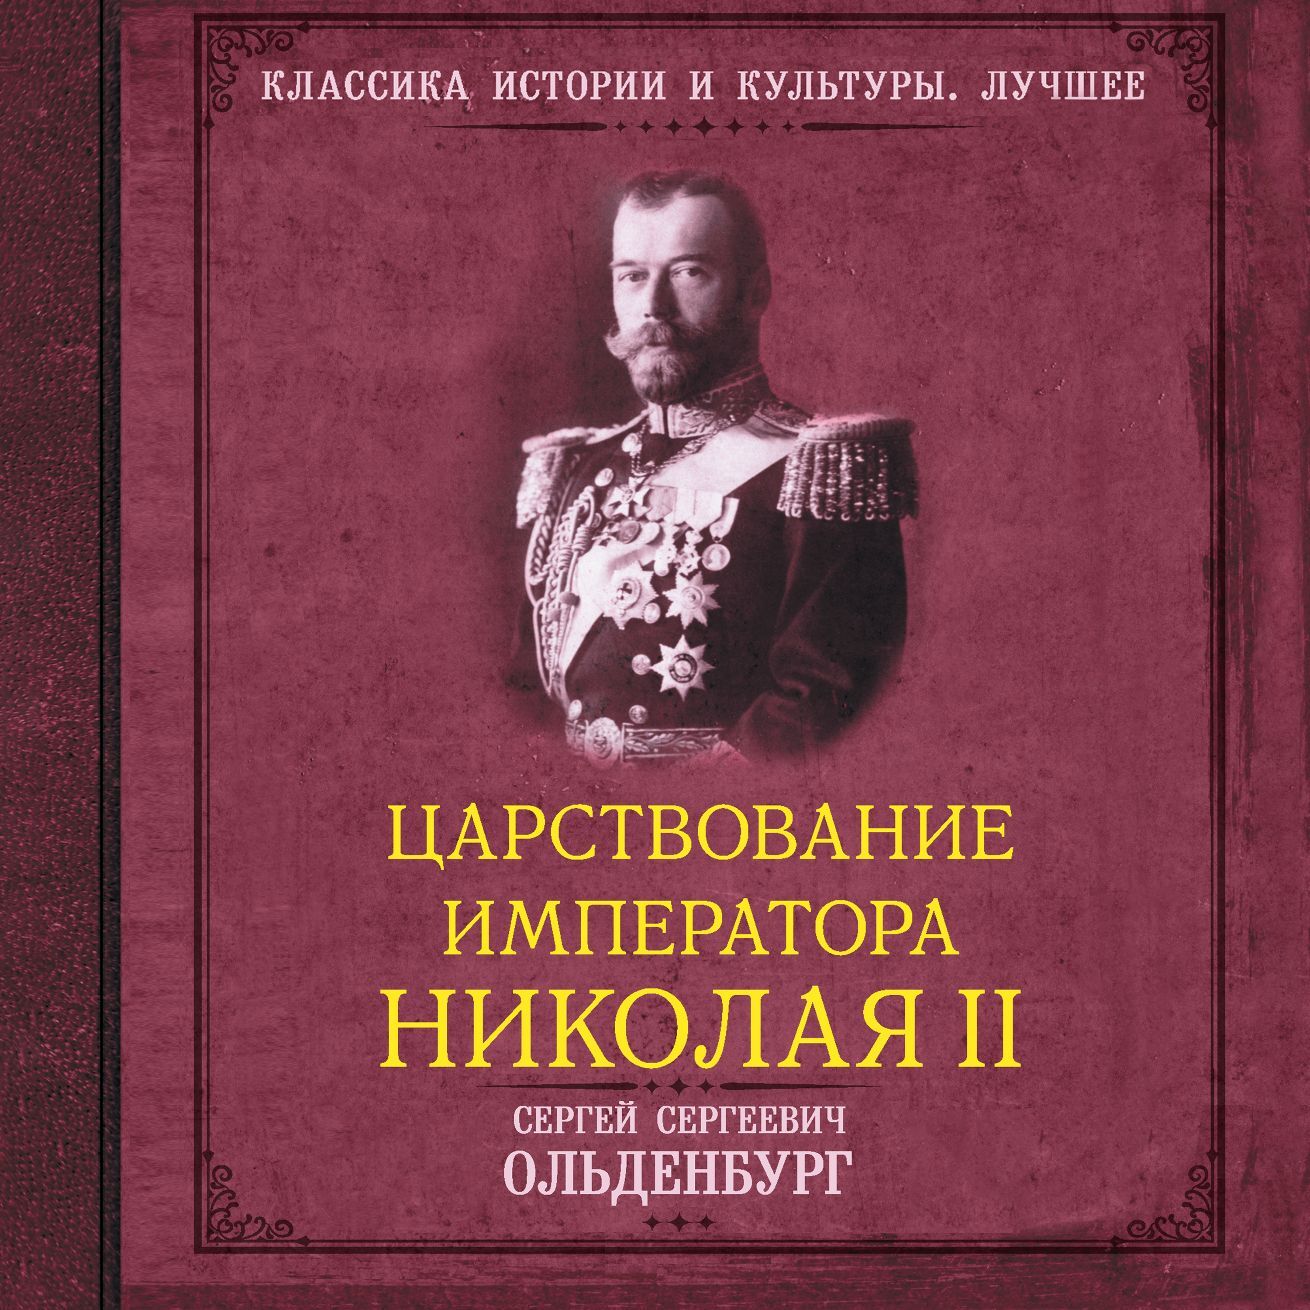 Царствование императора Николая II. САМОДЕРЖАВНОЕ ПРАВЛЕНИЕ. 1894—1904